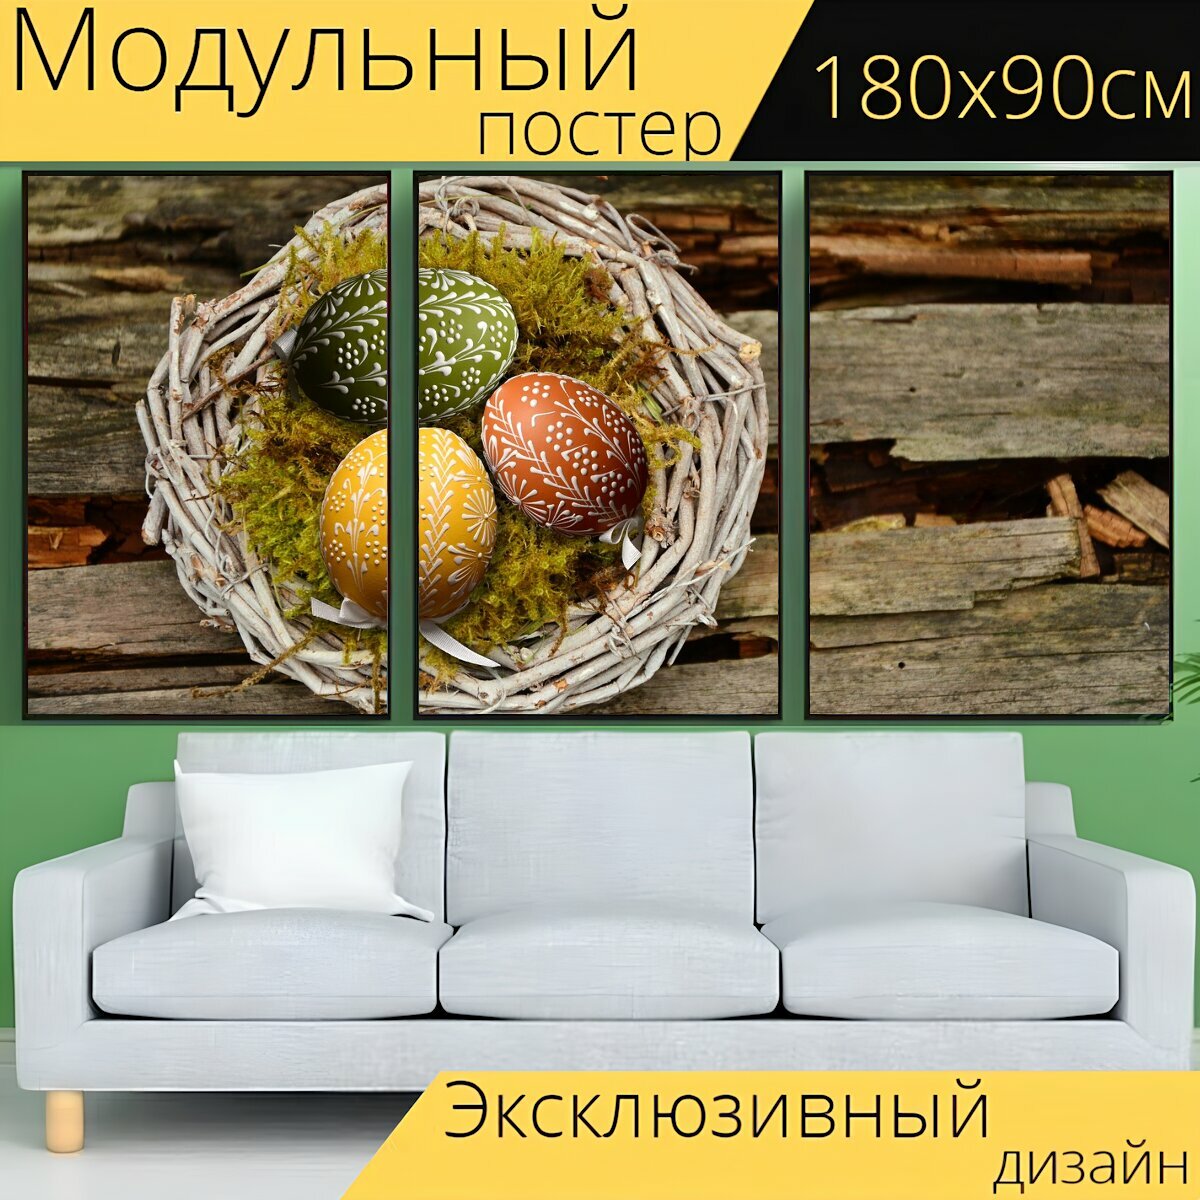 Модульный постер "Пасхальные яйца, пасха нест, пасхальный" 180 x 90 см. для интерьера